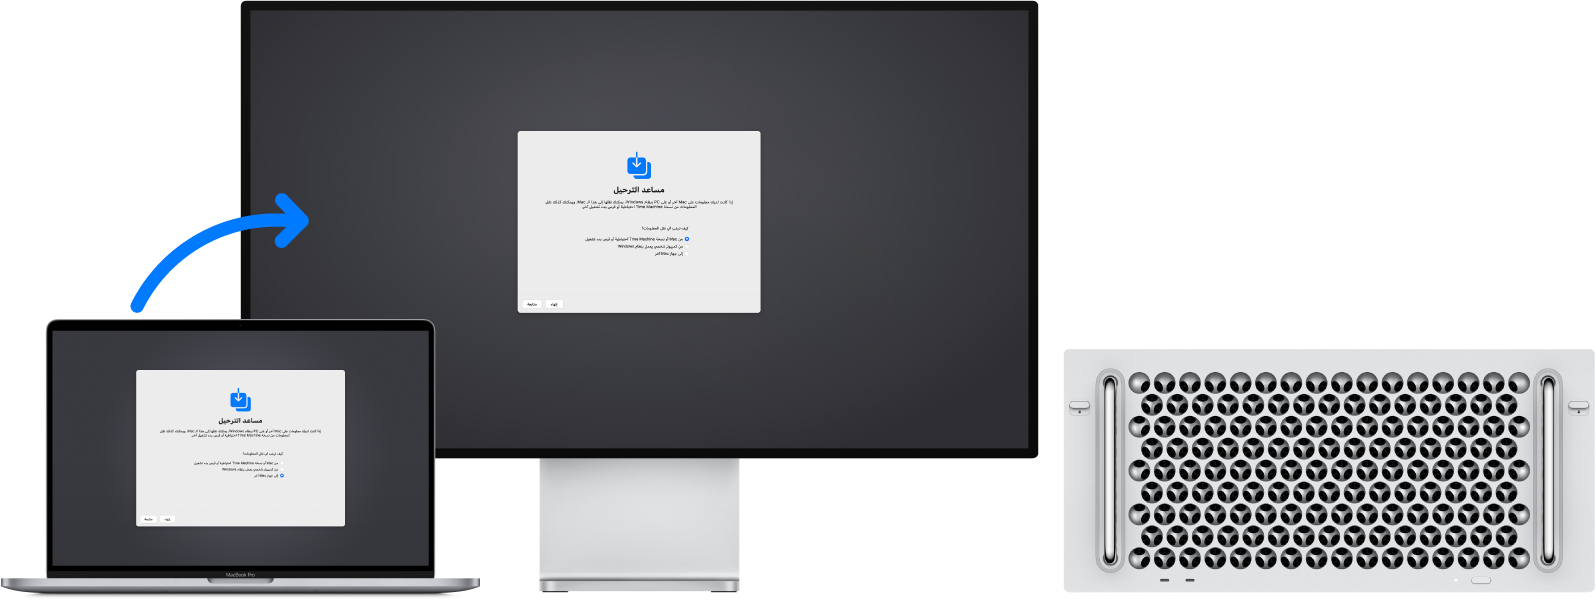 ‏MacBook Pro و Mac Pro يعرضان شاشة مساعد الترحيل. يظهر سهم من MacBook Pro إلى Mac Pro يوضح نقل البيانات من جهاز إلى آخر.